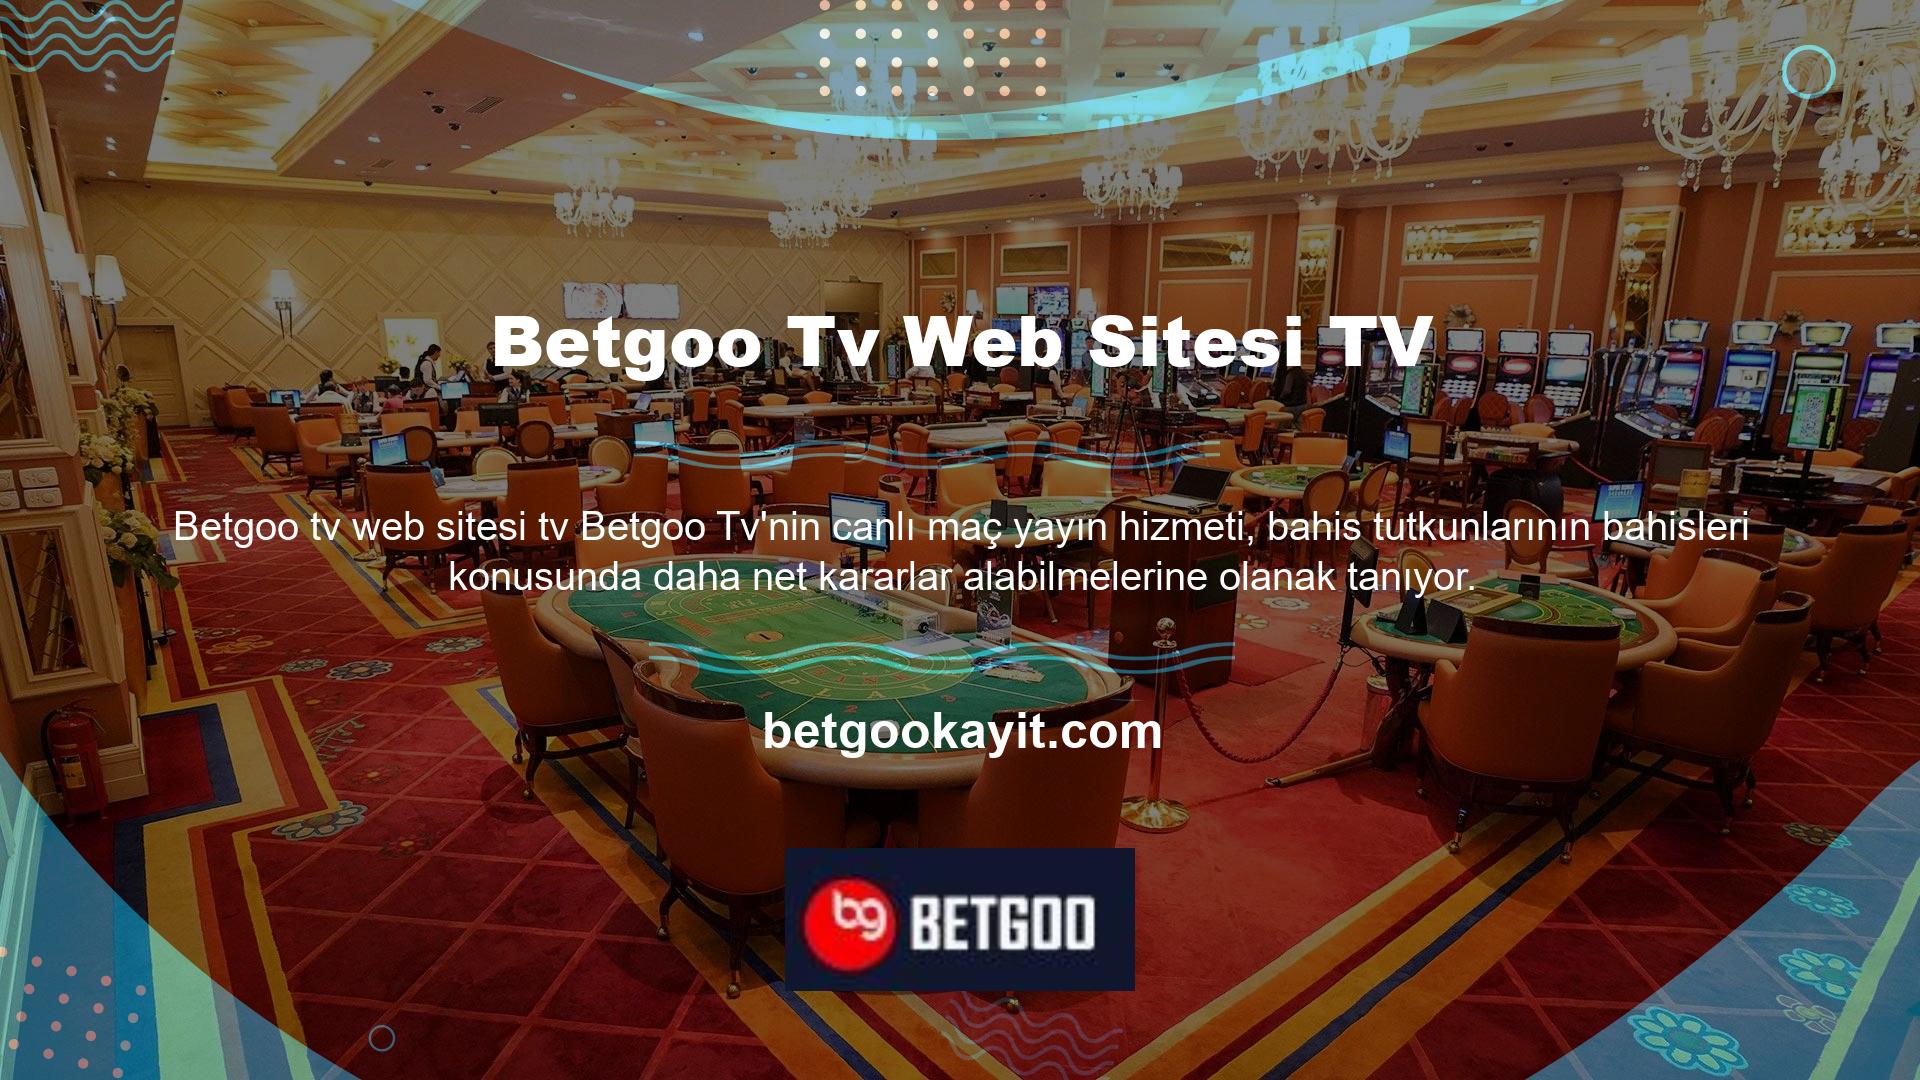 Sitenin sunduğu TV hizmeti, canlı maçları kesintisiz olarak izlemenizi sağlamak amacıyla tasarlanmış bir uygulamadır